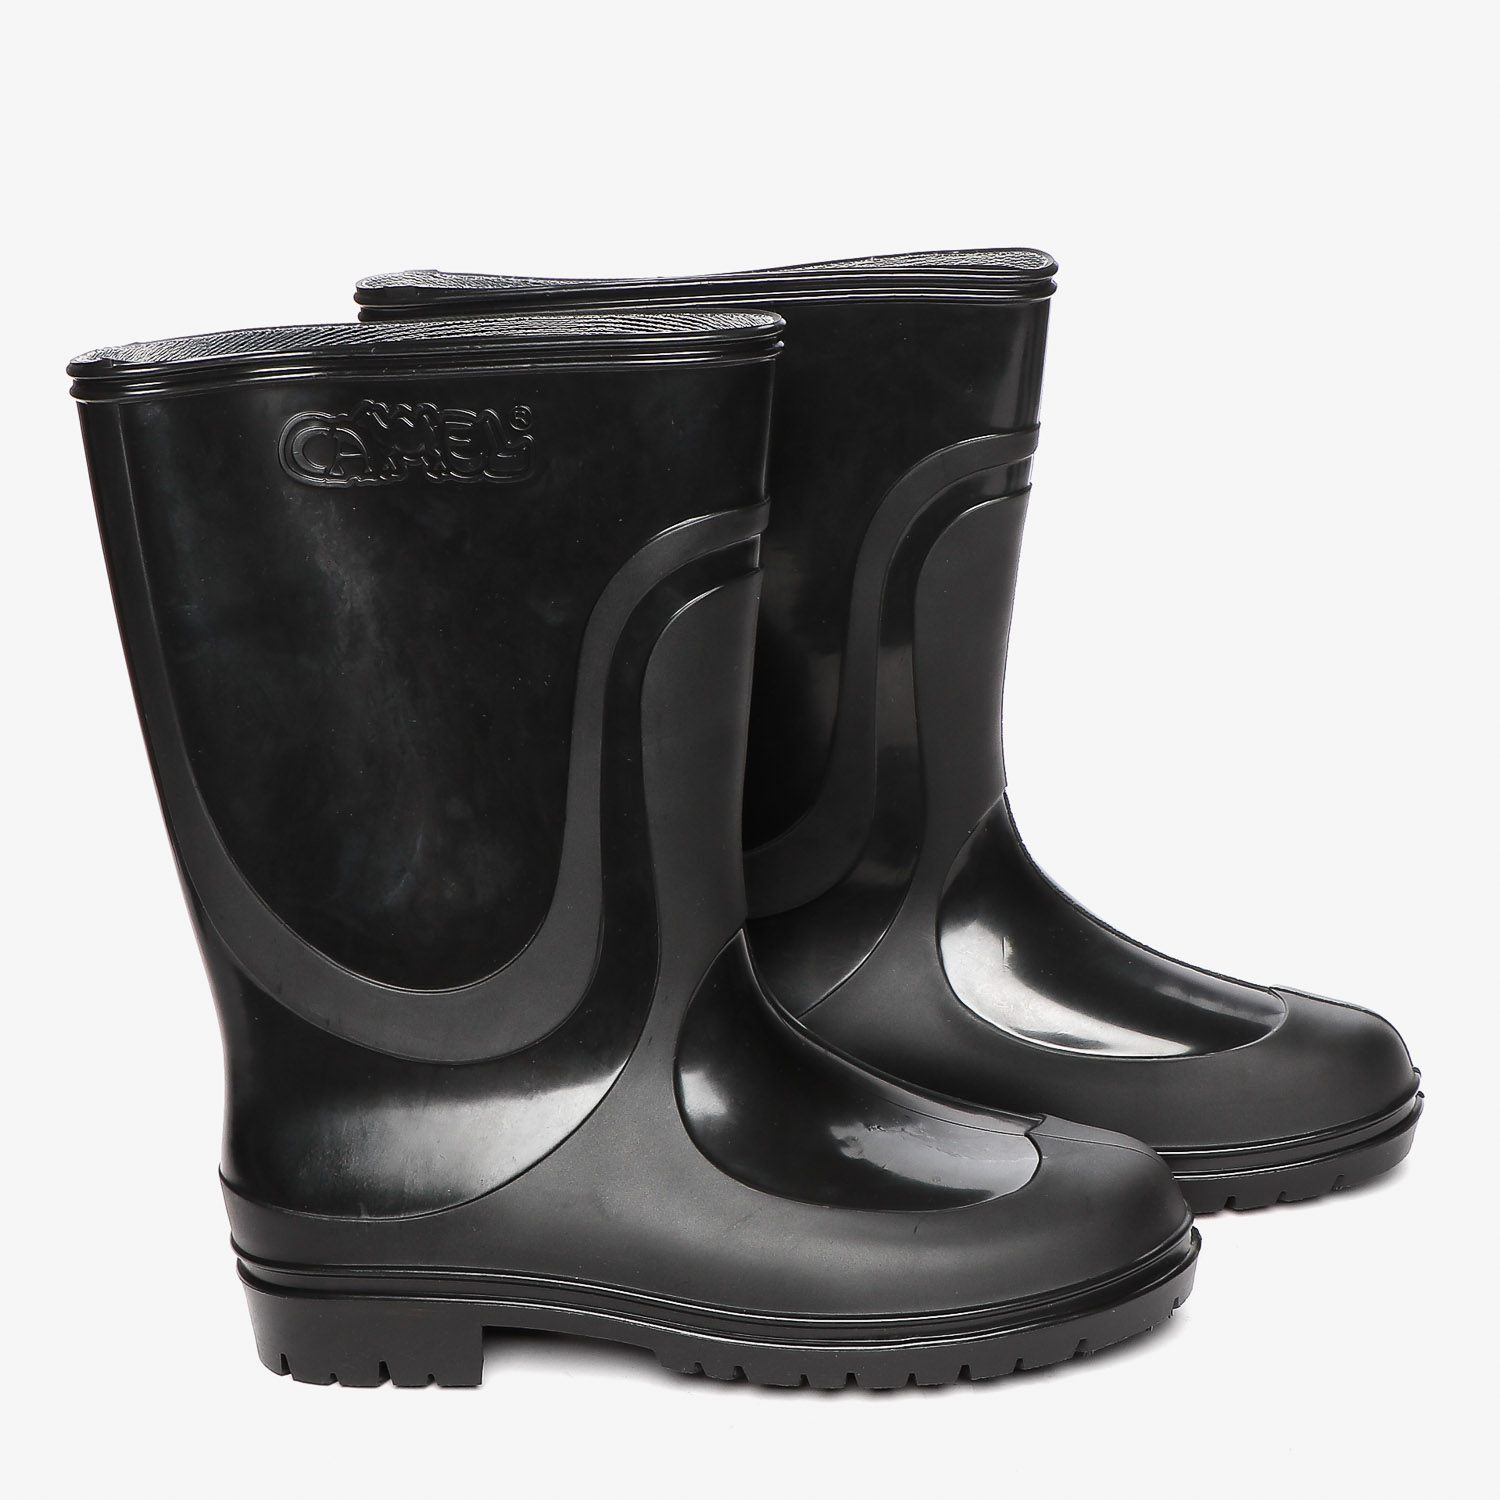 mens low cut rain boots